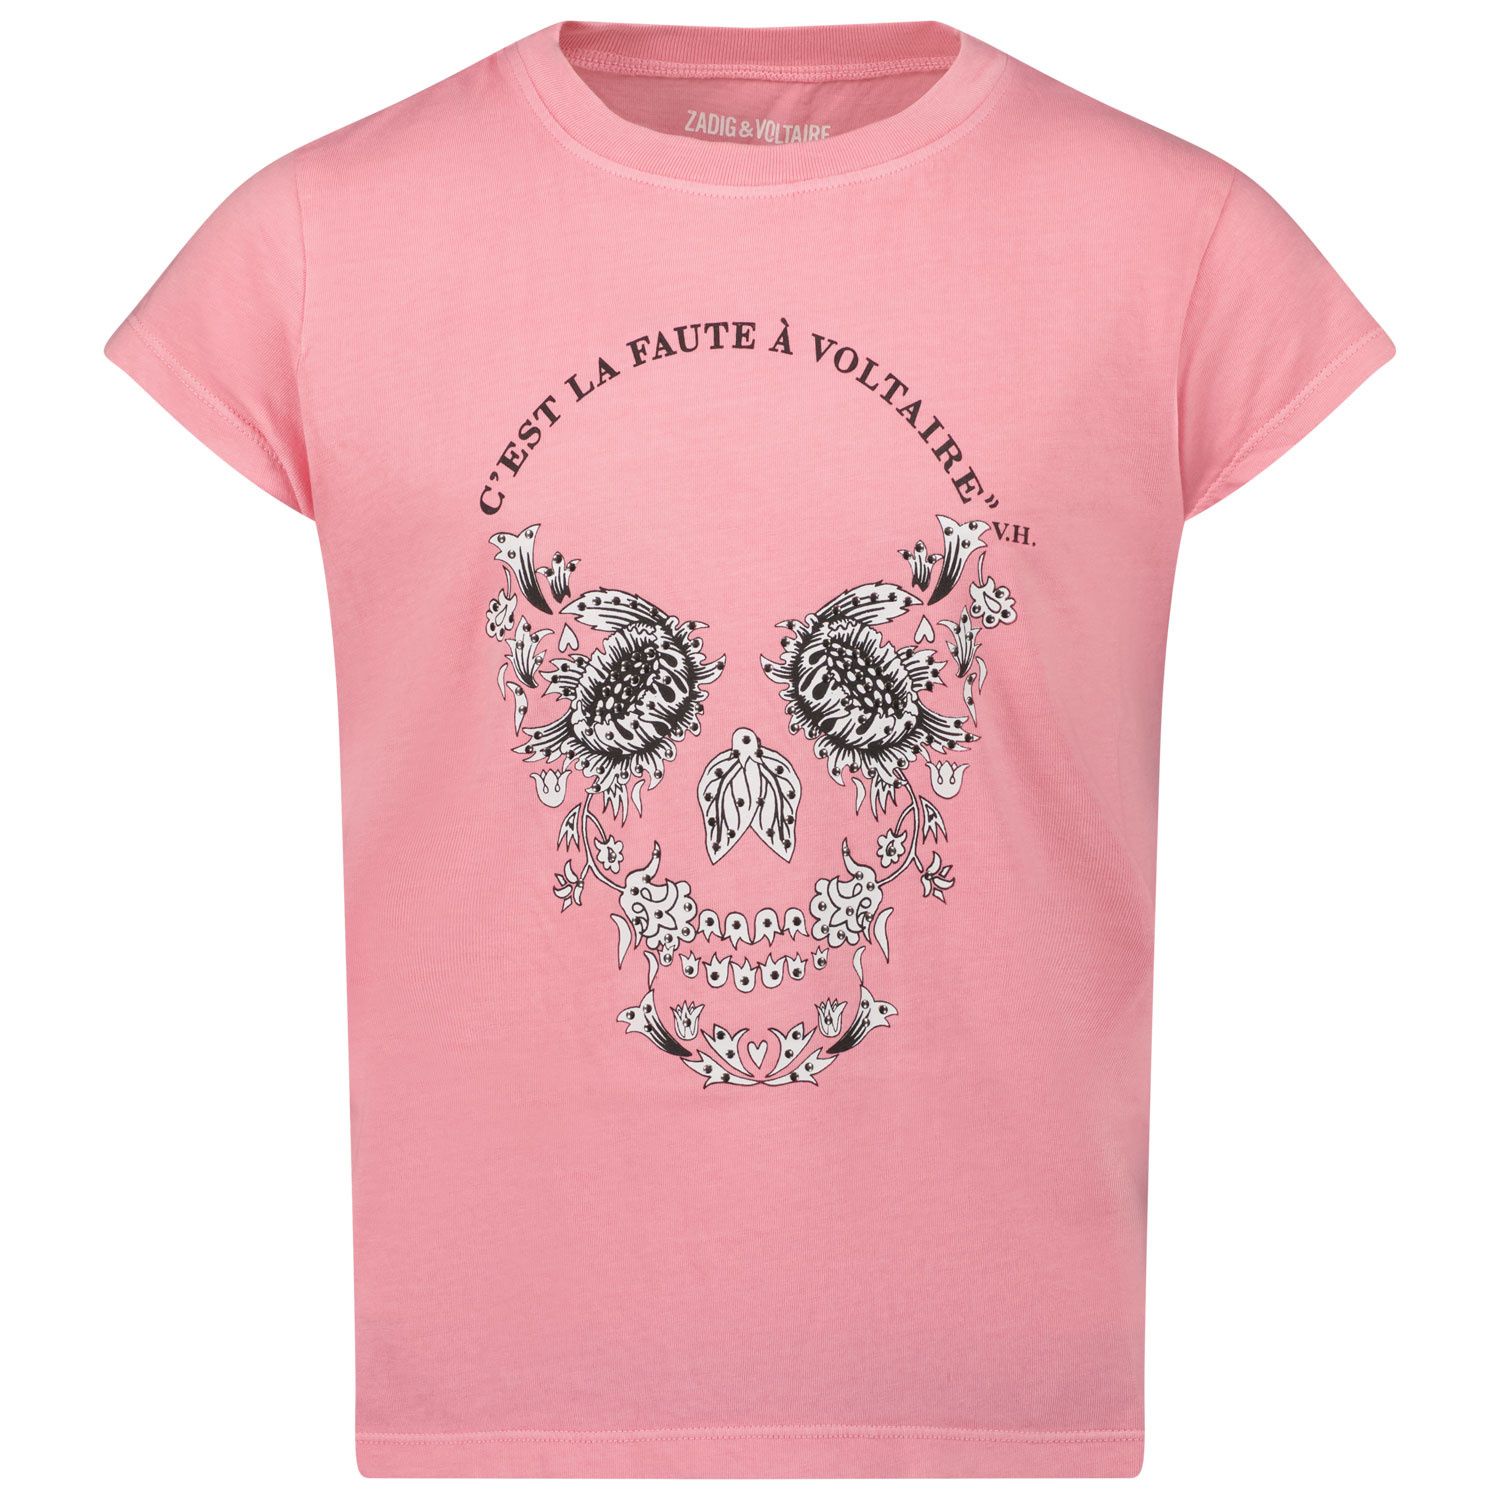 Afbeelding van Zadig & Voltaire X15330 kinder t-shirt roze